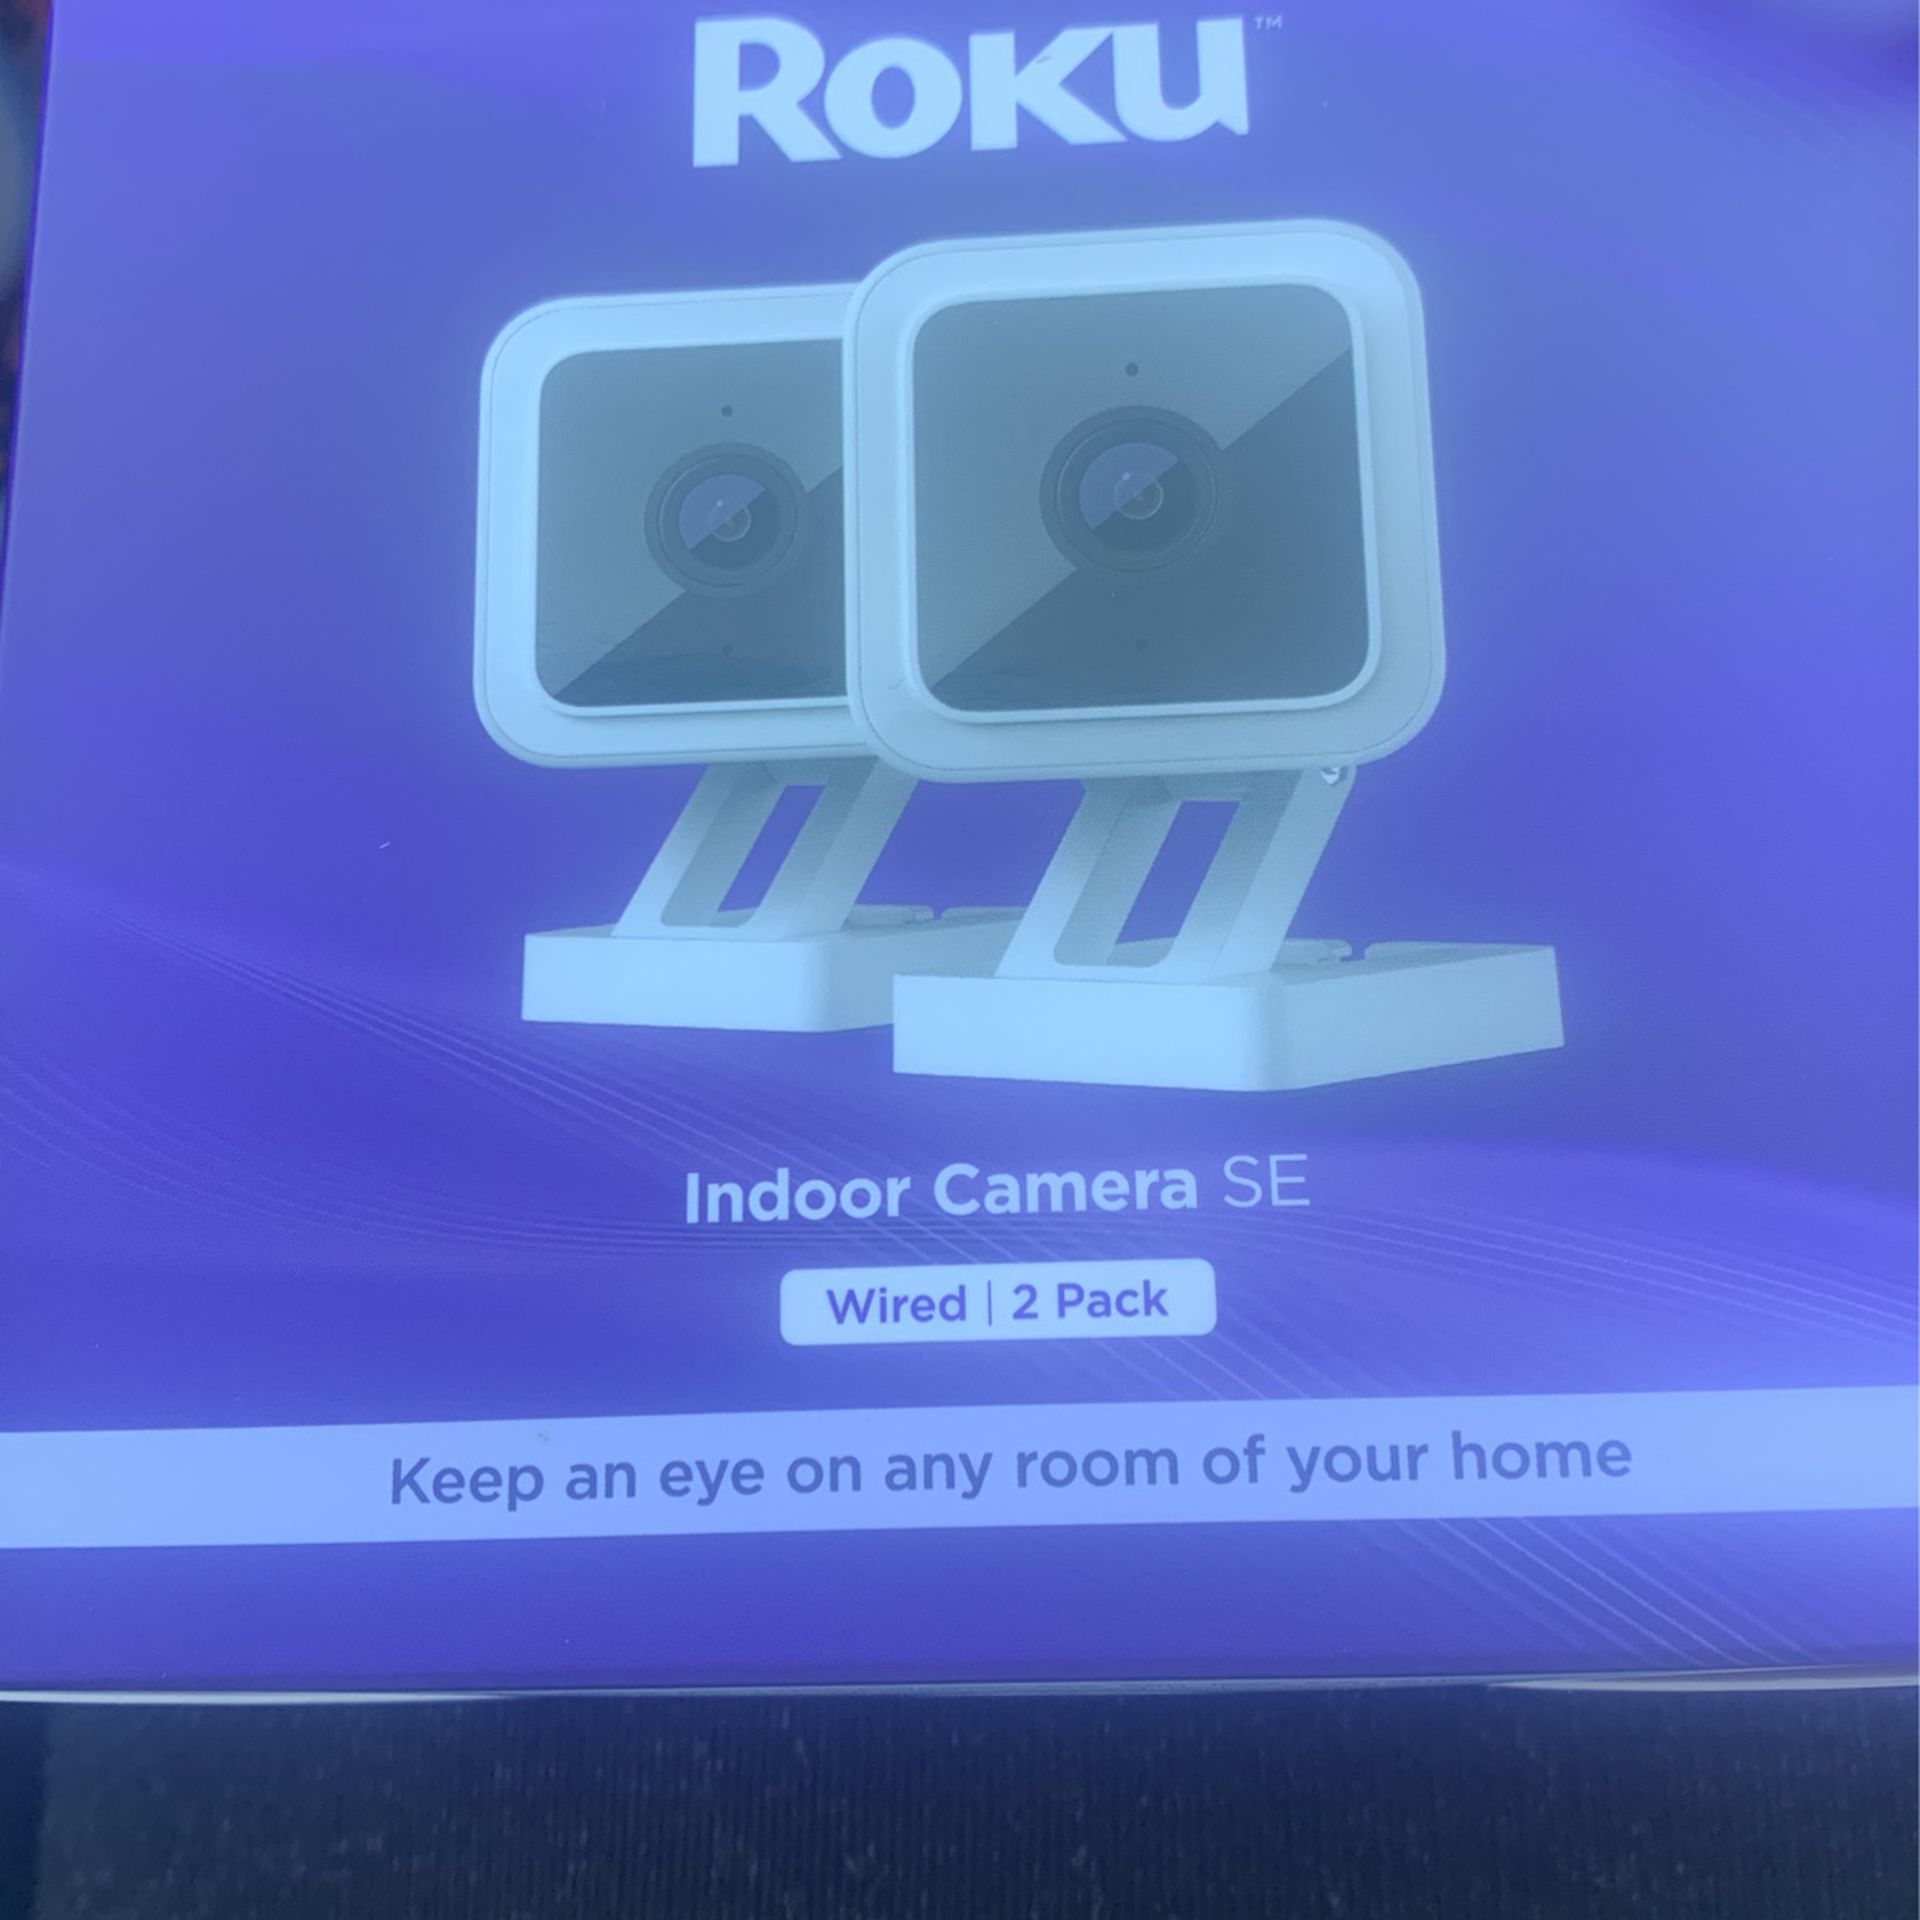 Roku Indoor Camera SE 